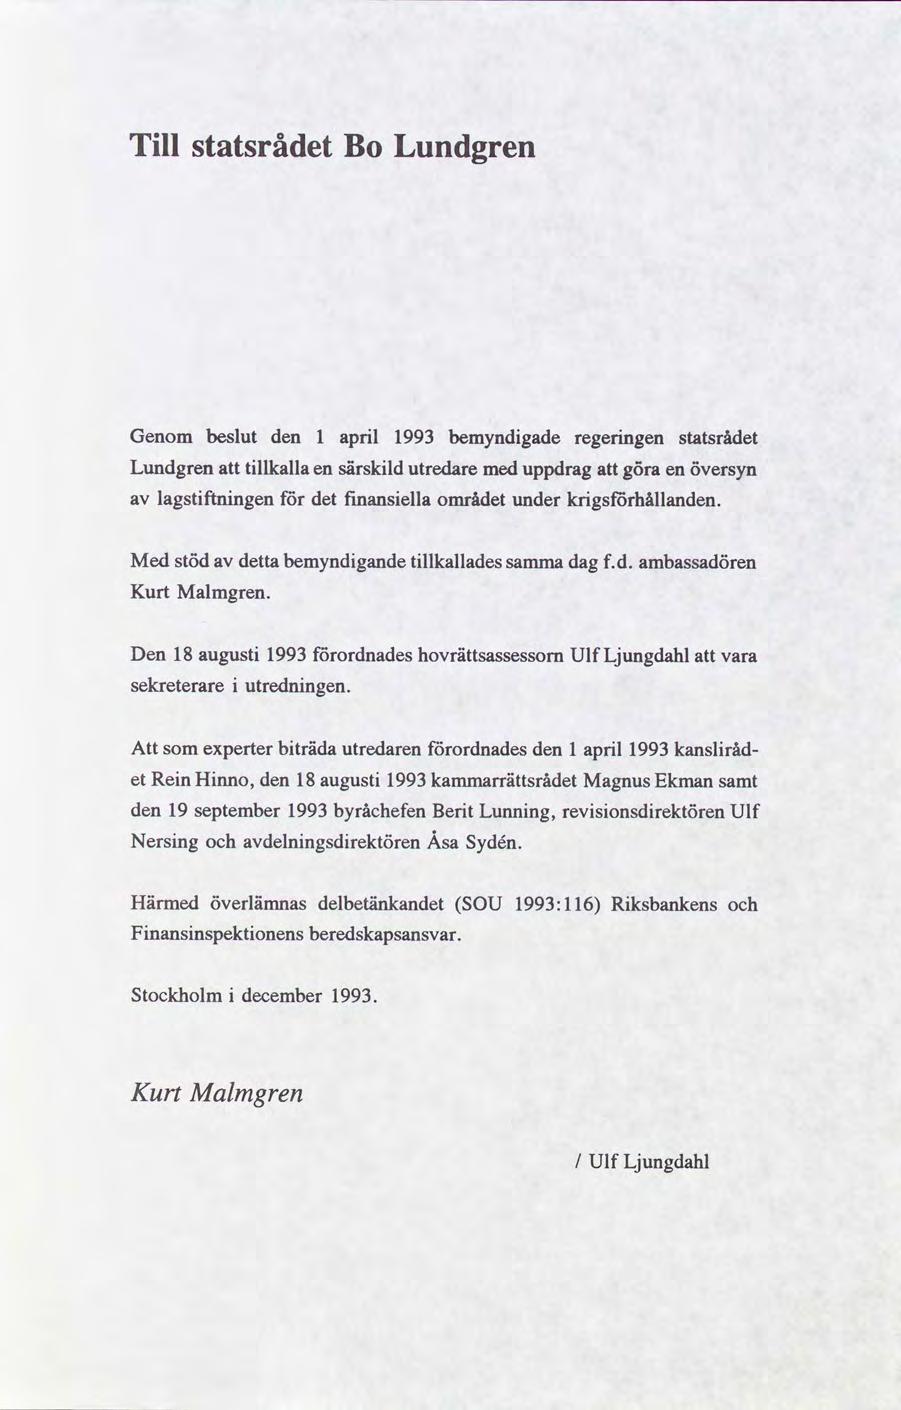 Tll statsrådet Bo Lundgren Genom beslut den 1 aprl 1993 bemyndgade regerngen statsrådet Lundgren kalla en särskld utredare uppdrag göra en översyn lagstftnngen det fnansella området under